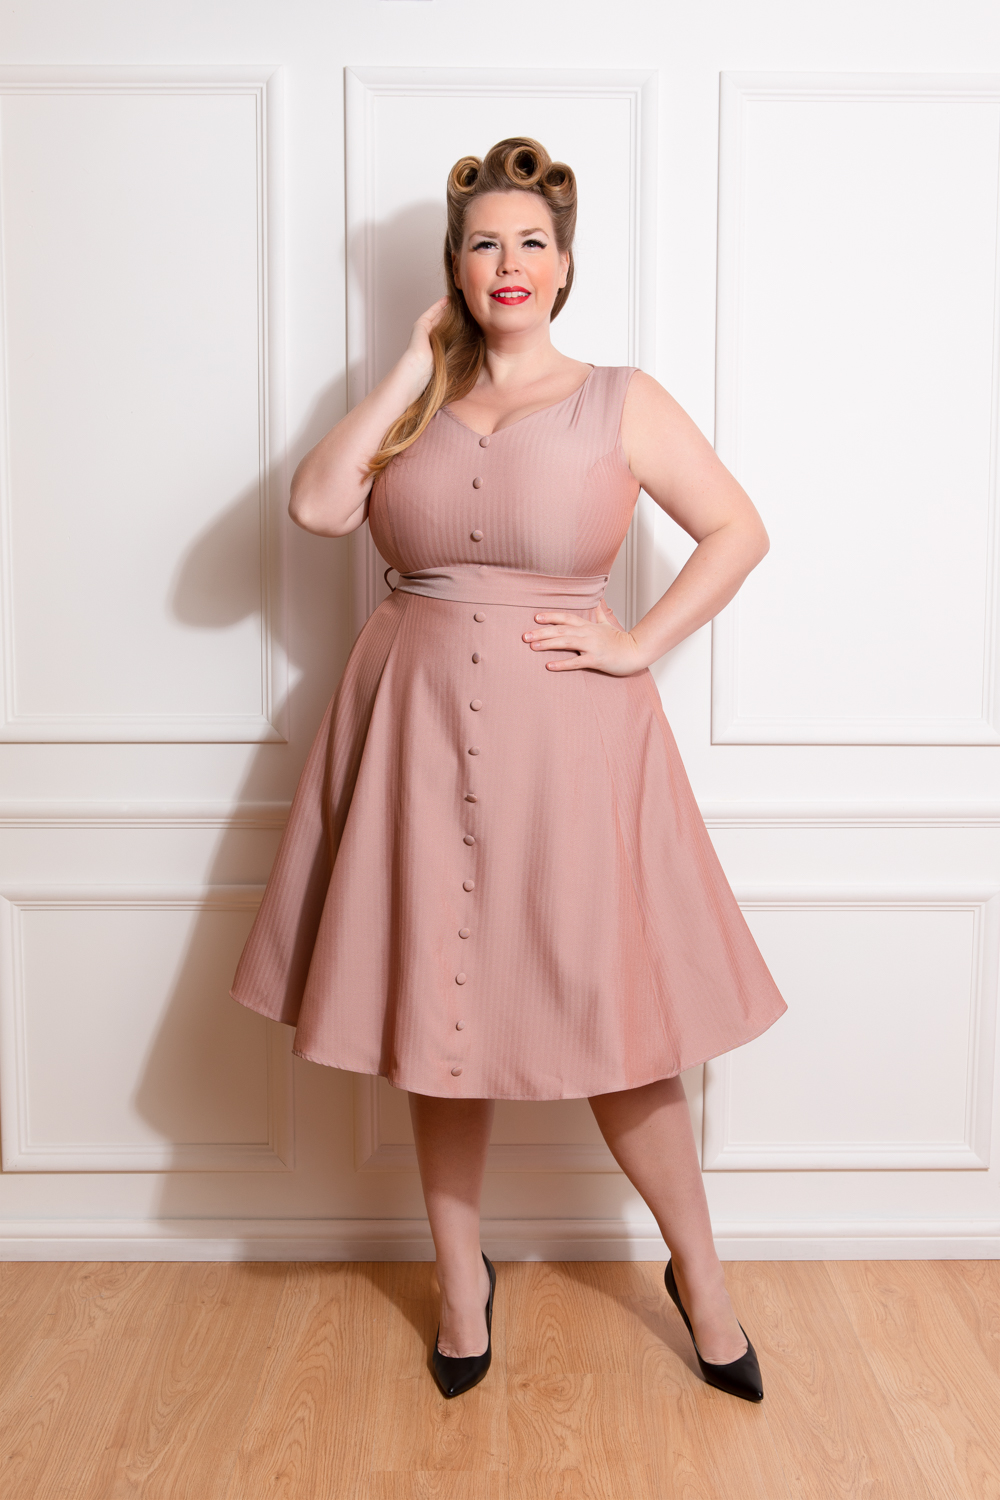 Alison Swing Dress in Plus Size in Pink ...